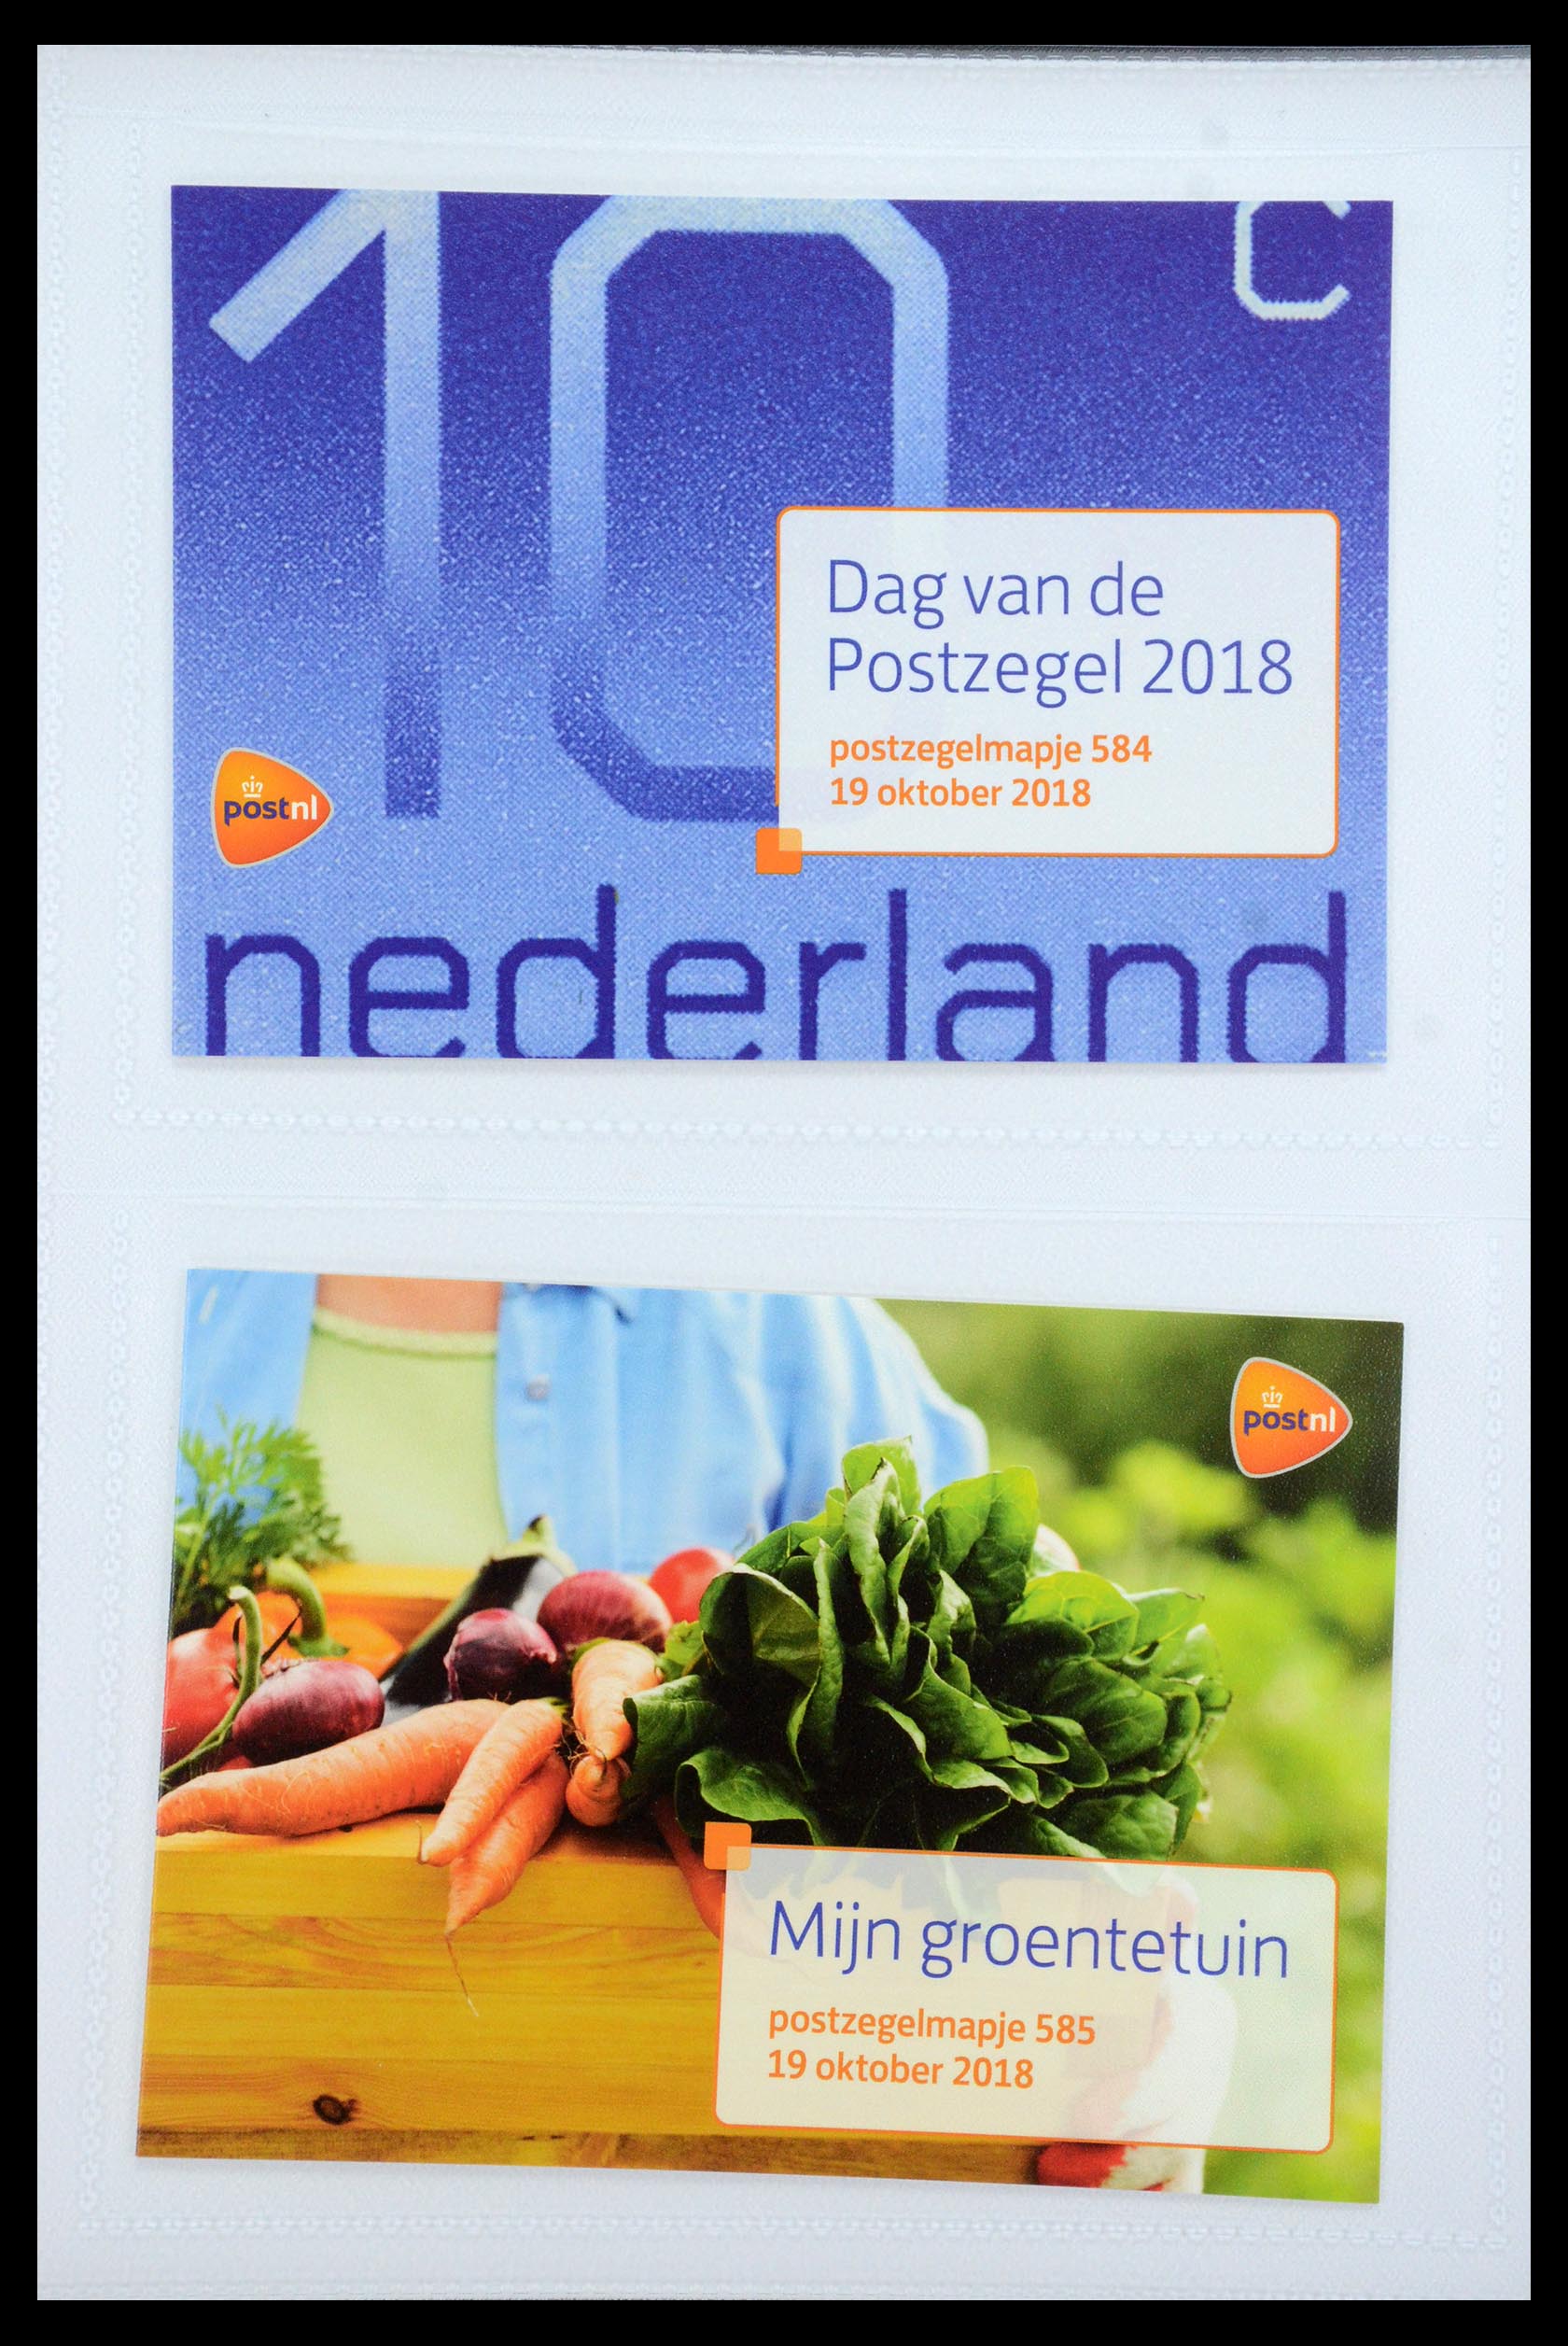 35947 353 - Stamp Collection 35947 Netherlands PTT presentation packs 1982-2019!